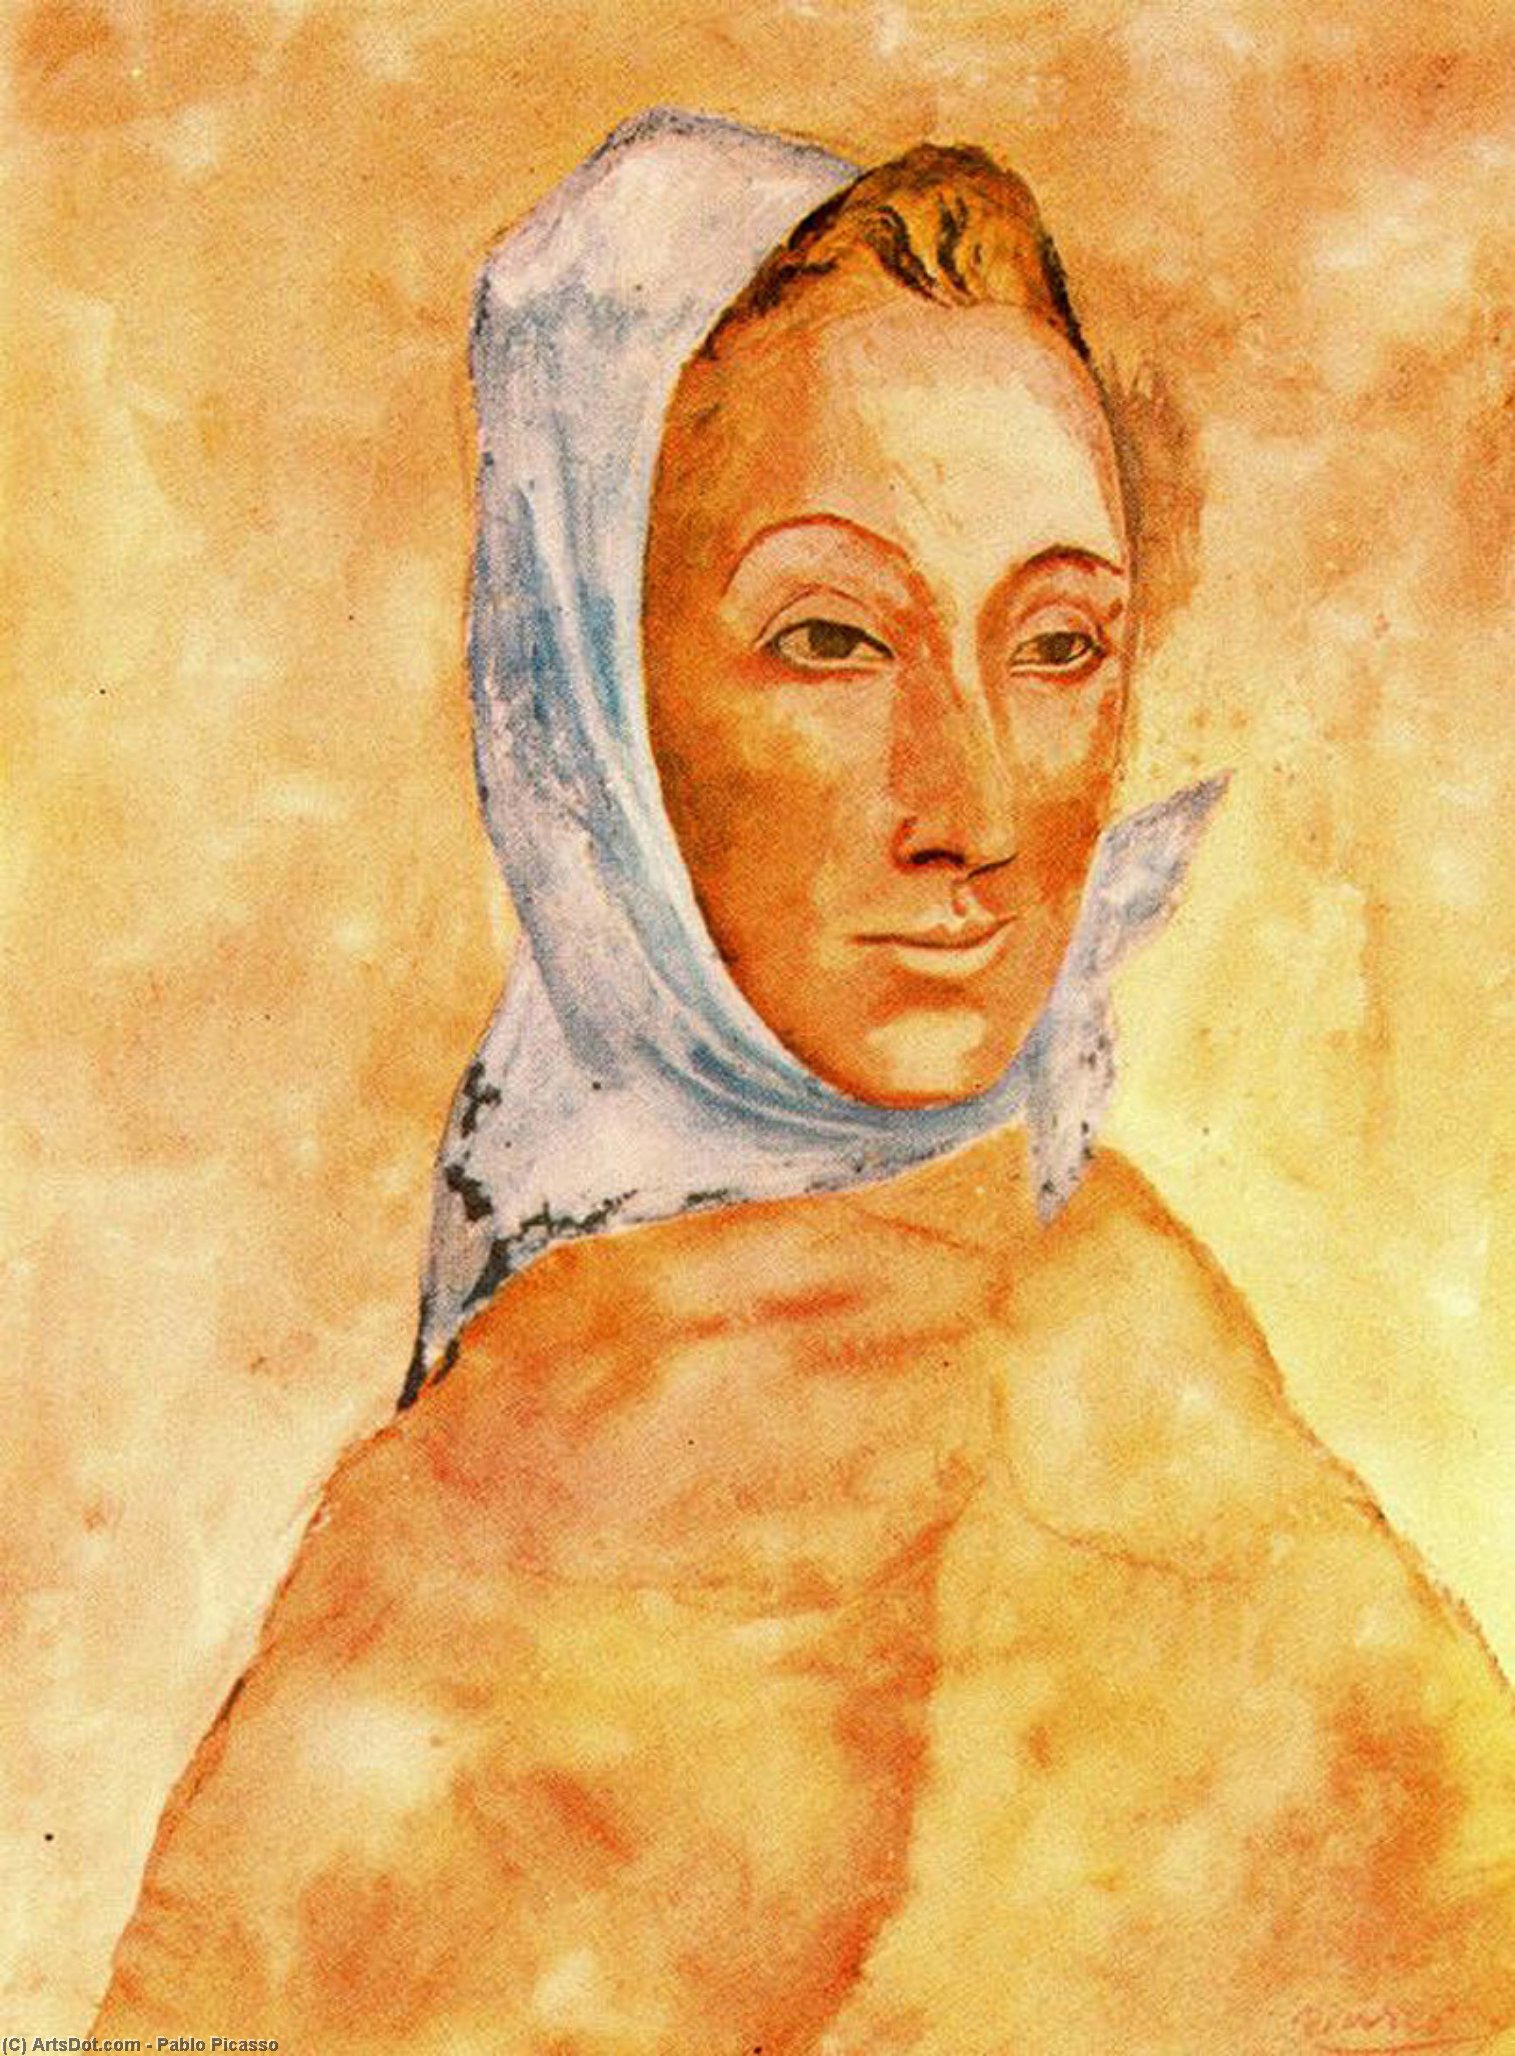 WikiOO.org - Encyclopedia of Fine Arts - Lukisan, Artwork Pablo Picasso - Portrait of Fernande Olivier in headscarves